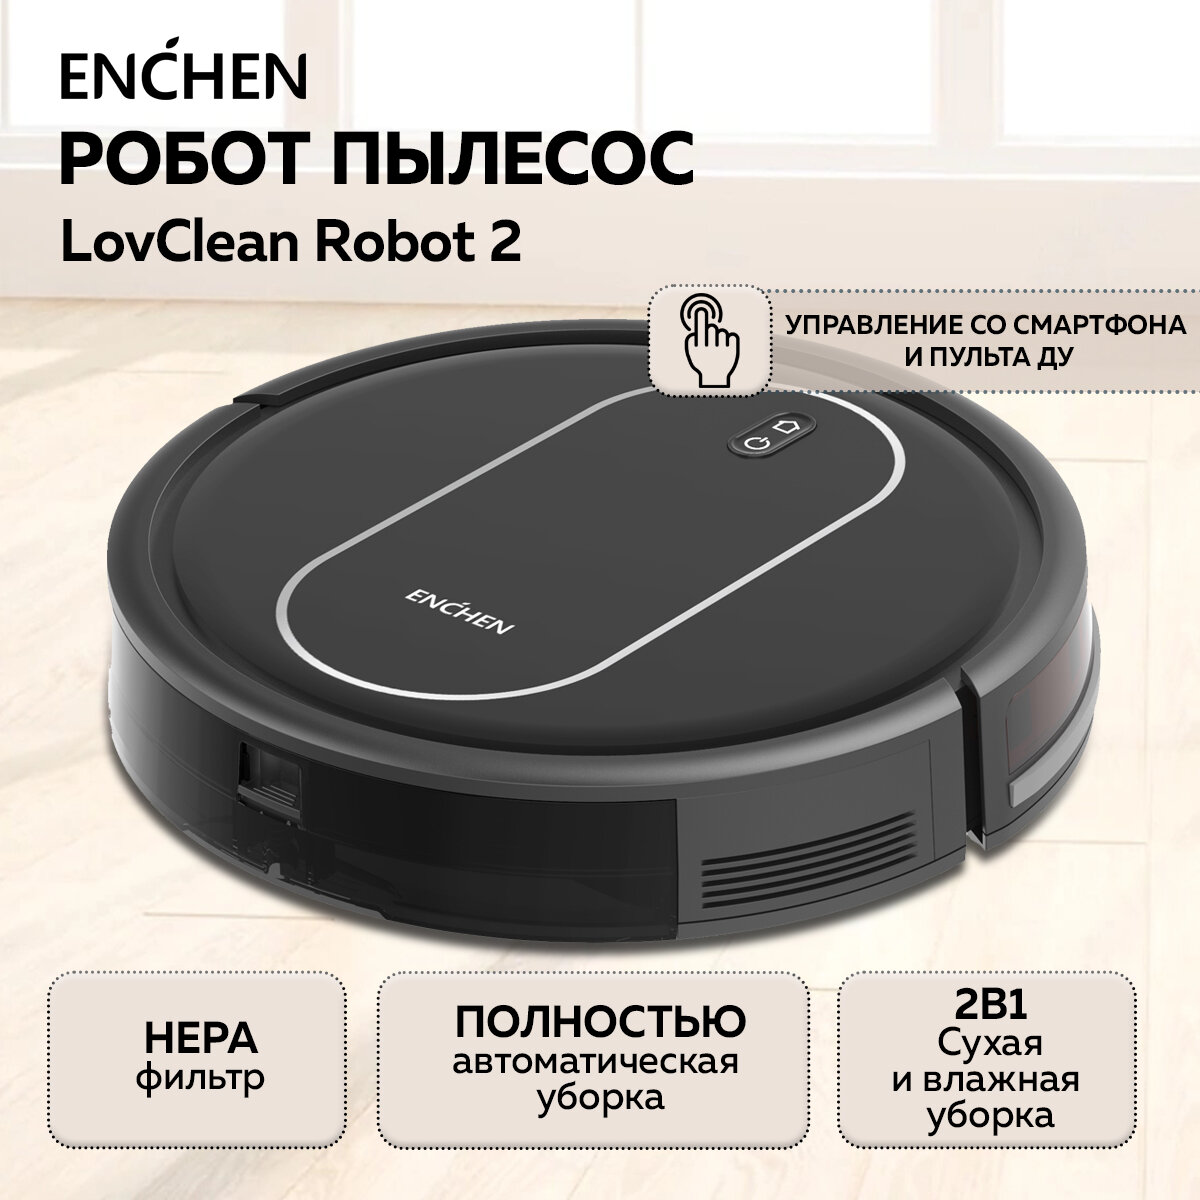 Робот-пылесос Enchen LovClean Robot 2 белый/ Моющий робот пылесос, Беспроводной мойщик пола и ковров